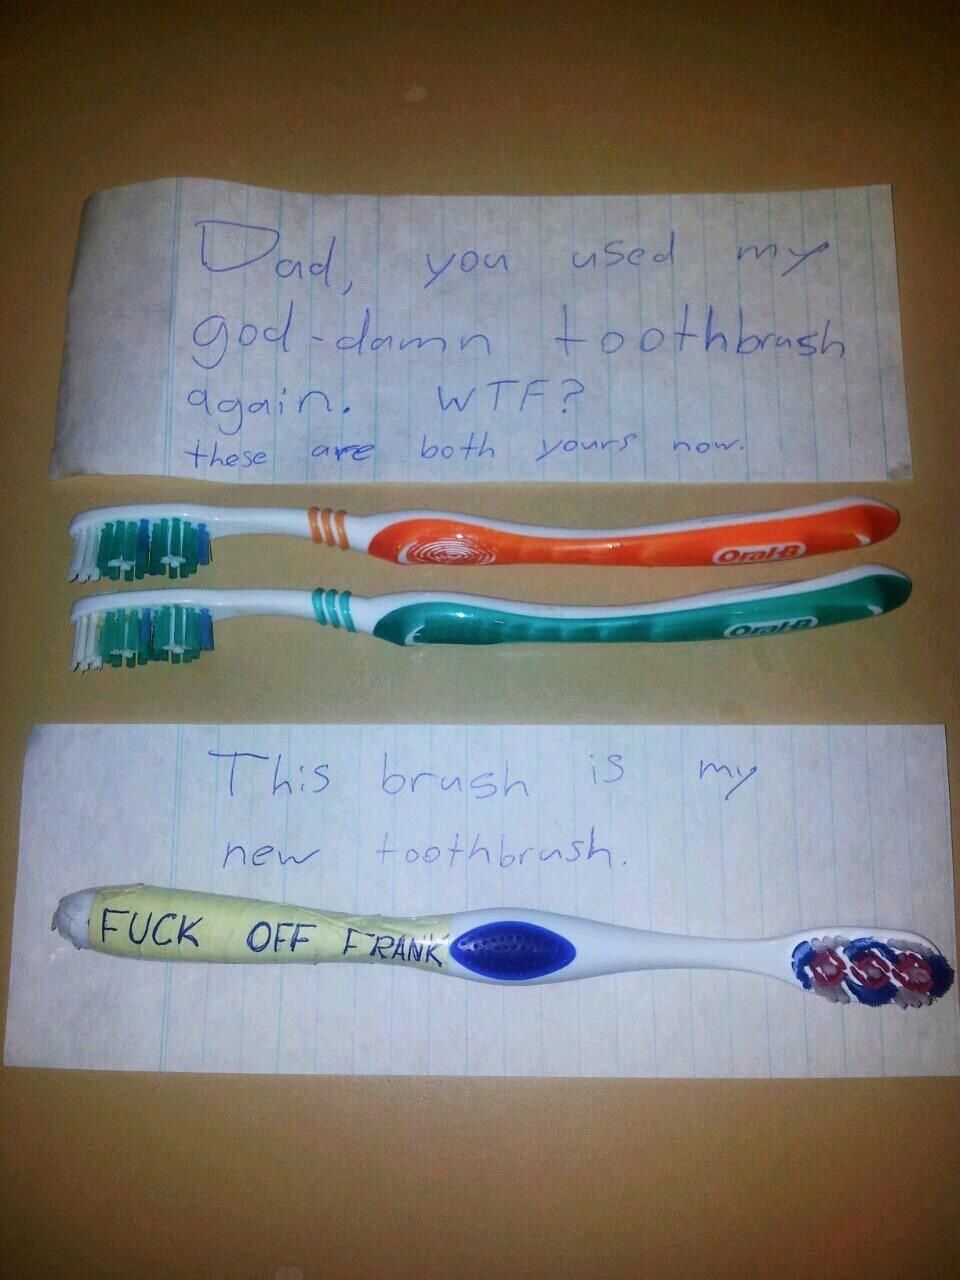 My new toothbrush